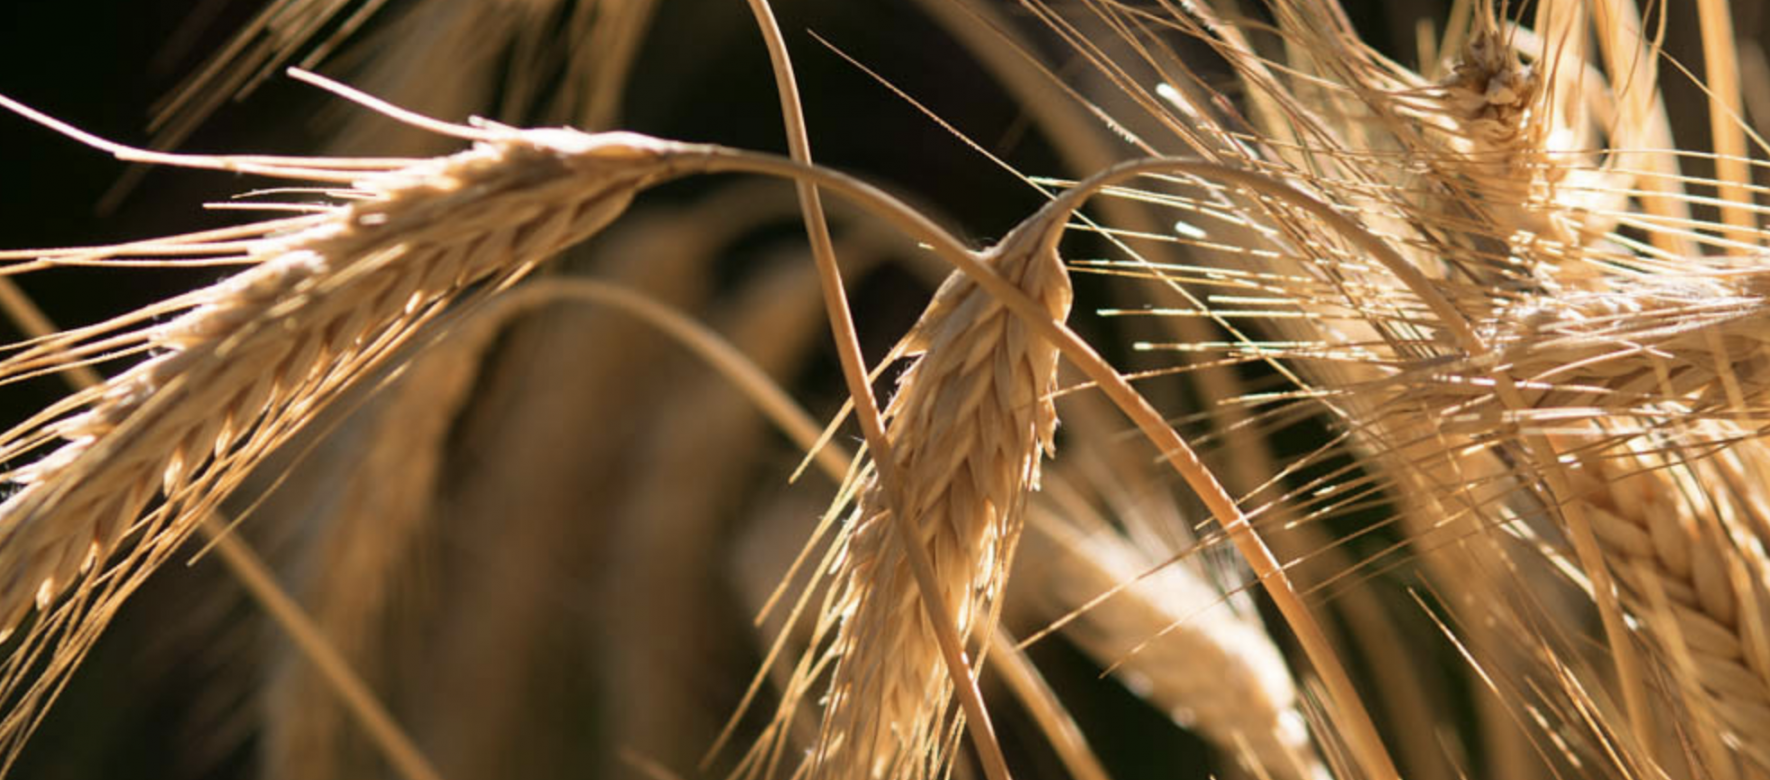 L’Egypte a importé 2,4 millions de tonnes de blé entre juillet et août 2020, soit une hausse de 40 % par rapport à 2019